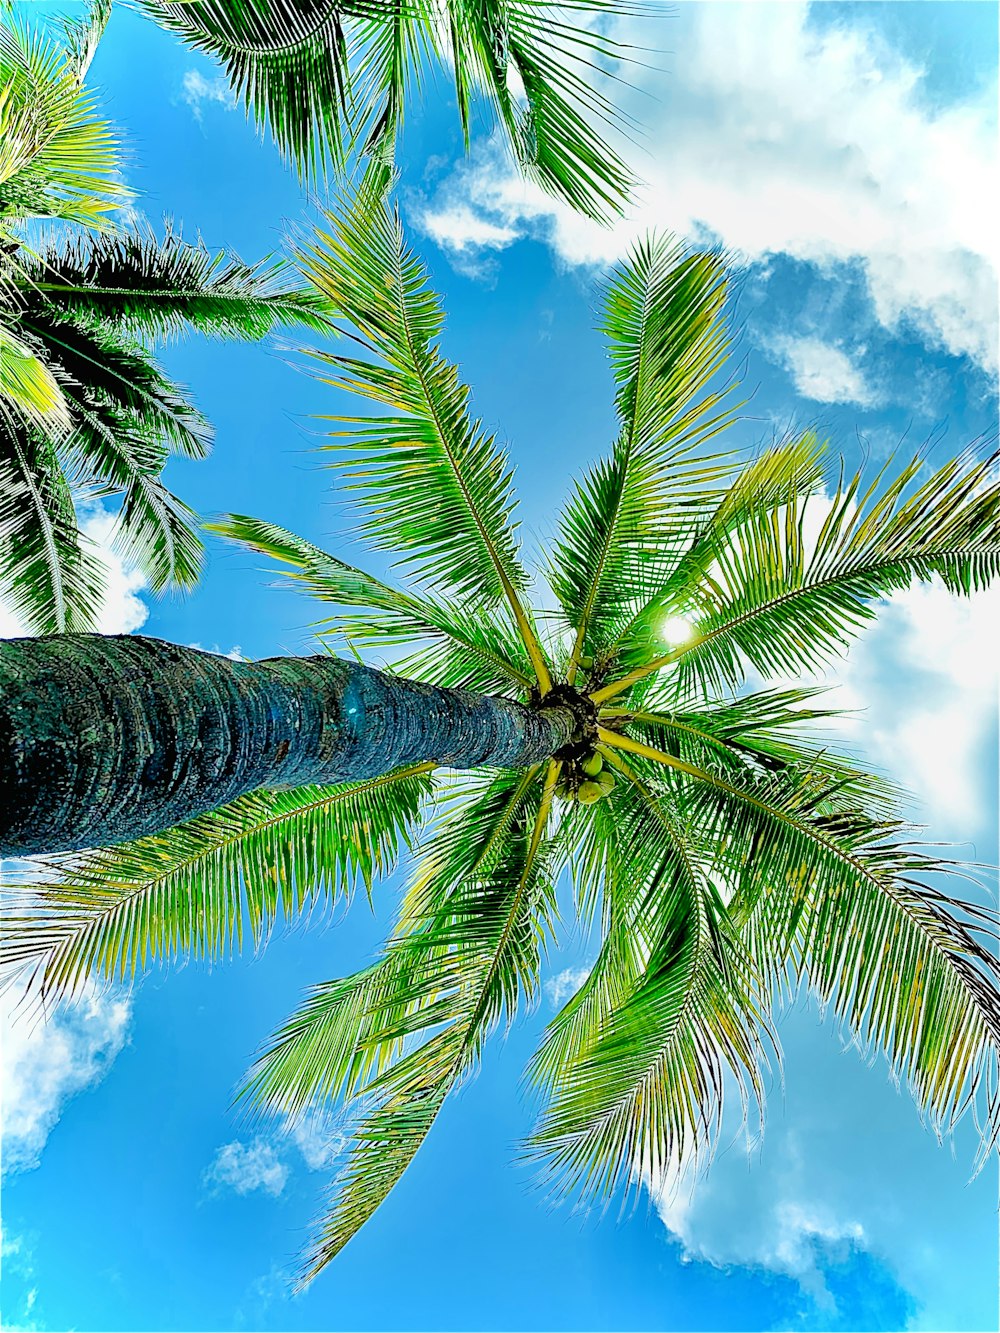 낮 동안 파란색과 흰색 하늘 아래 녹색 코코넛 나무의 로우 앵글 사진